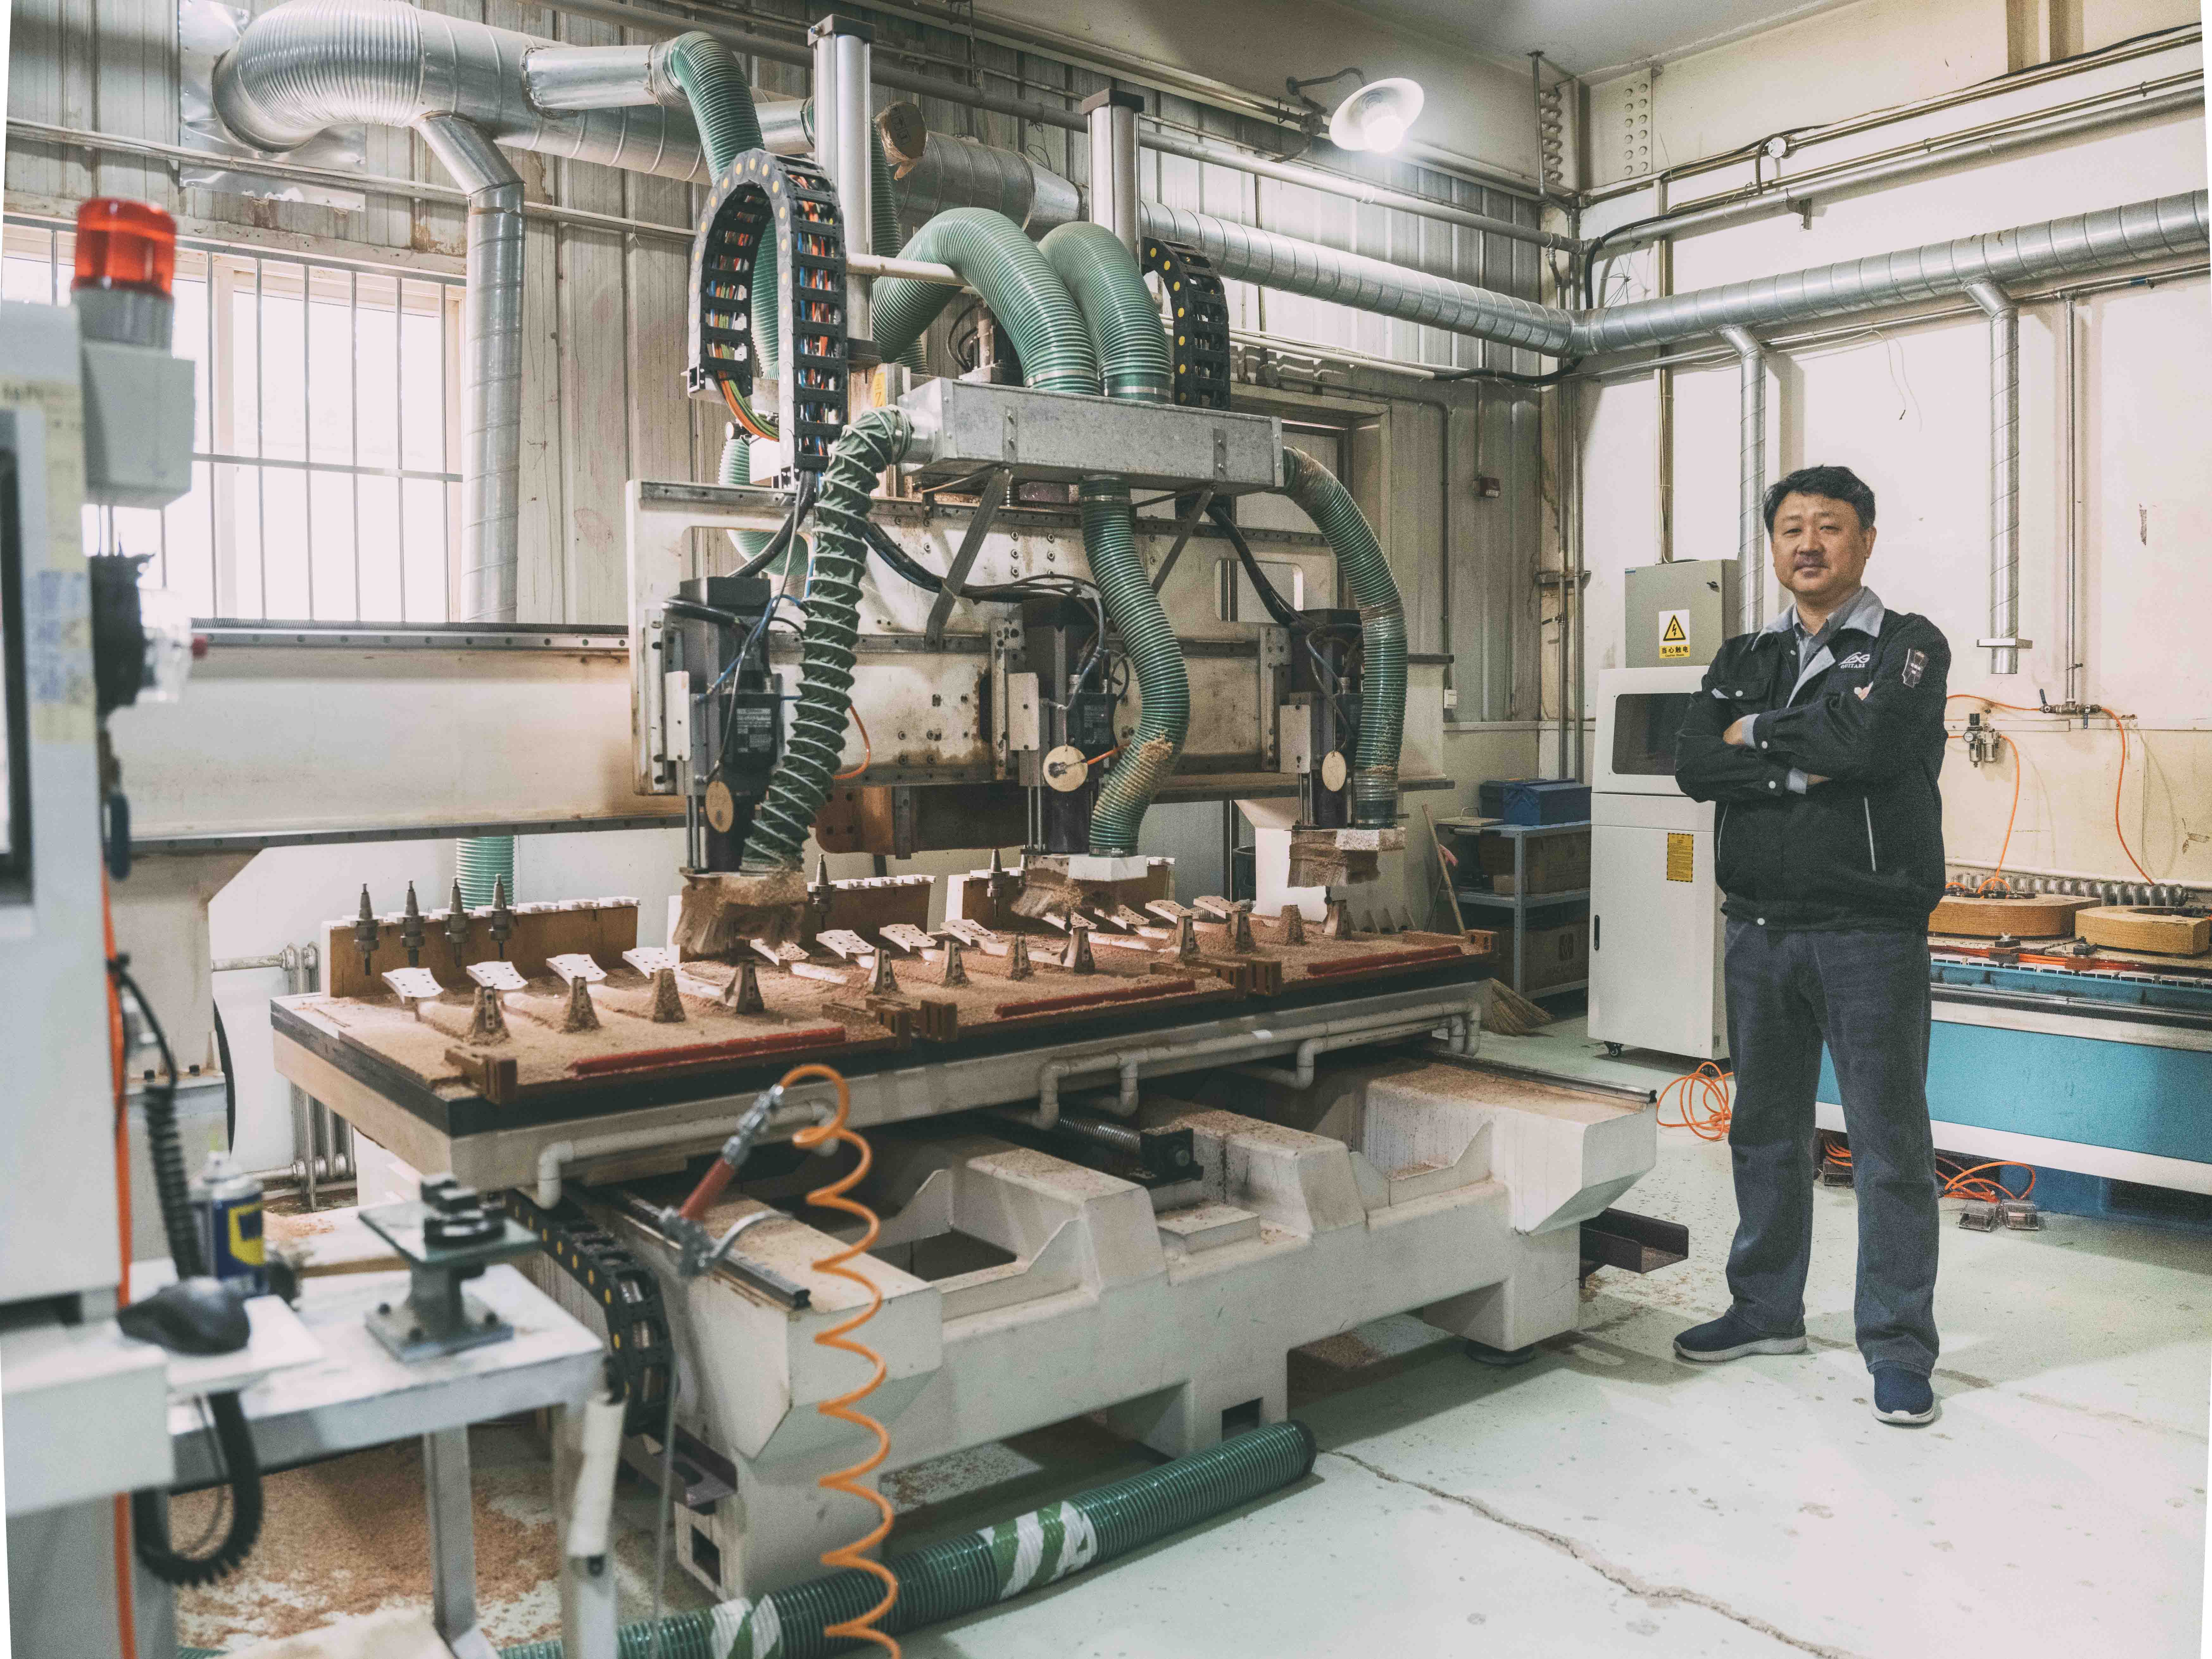 Steve Kim, directeur de l'usine Lâg, se tient devant une machine de fabrication des têtes de guitare Lâg